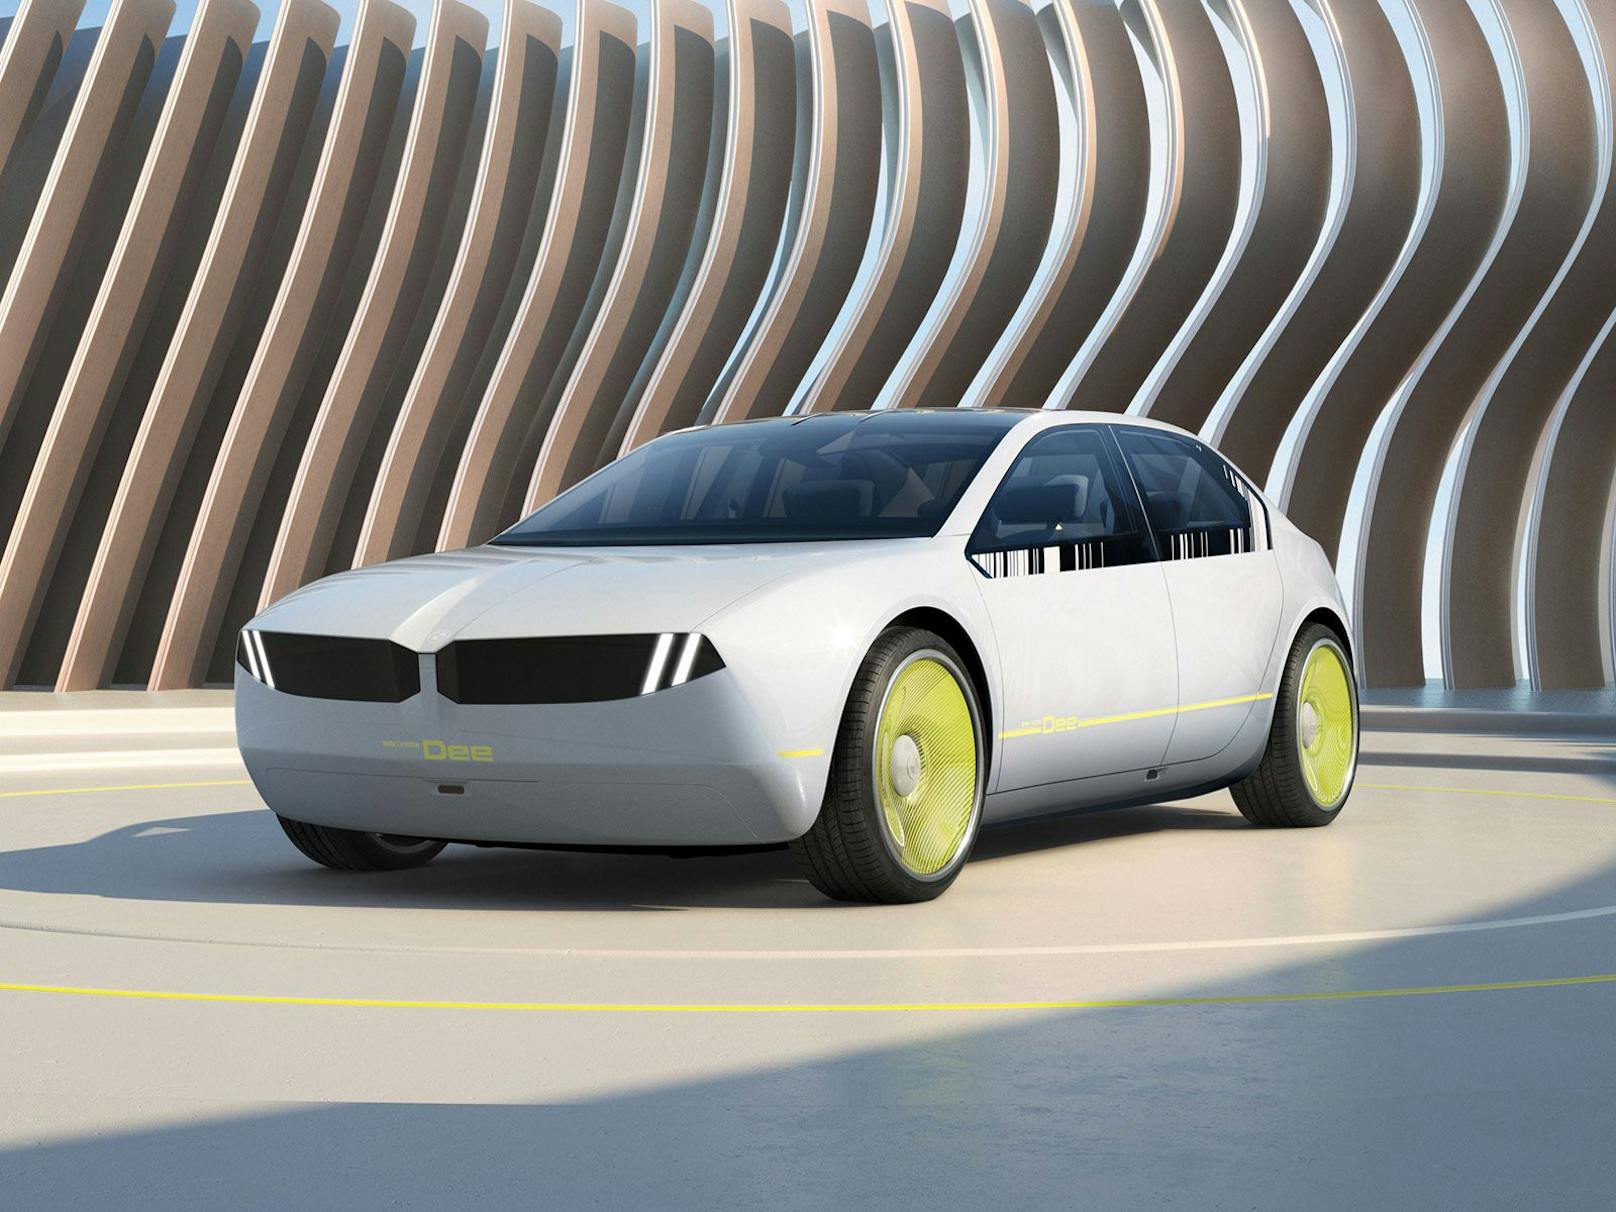 Das Concept Car soll die Designrichtung neuer Modelle zeigen